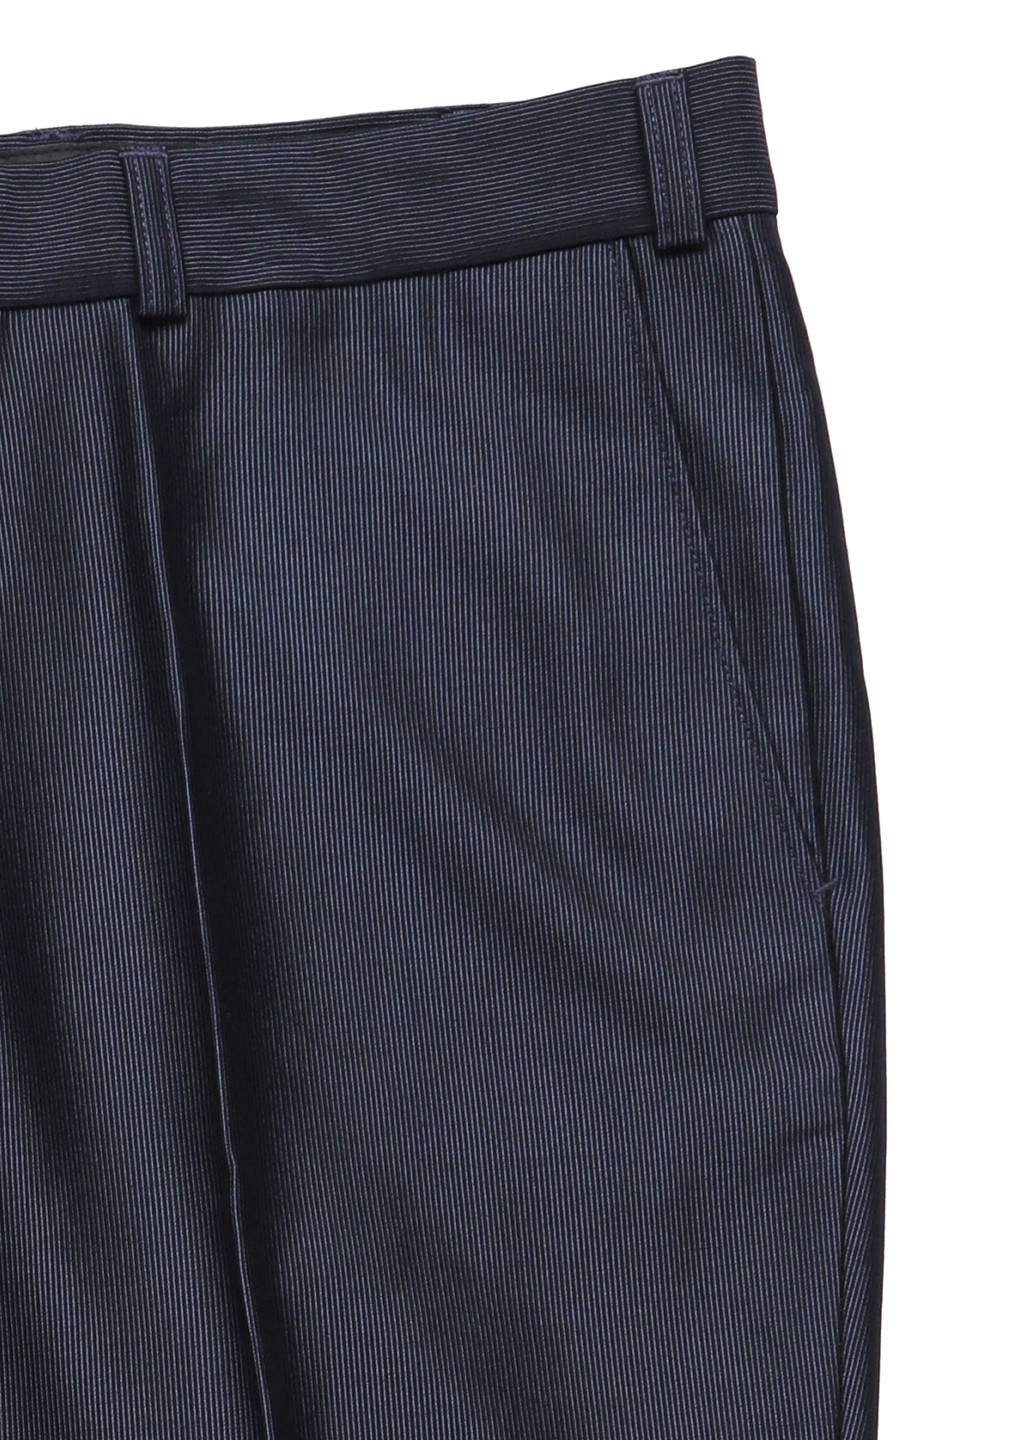 Синие кэжуал демисезонные прямые, классические брюки C&A